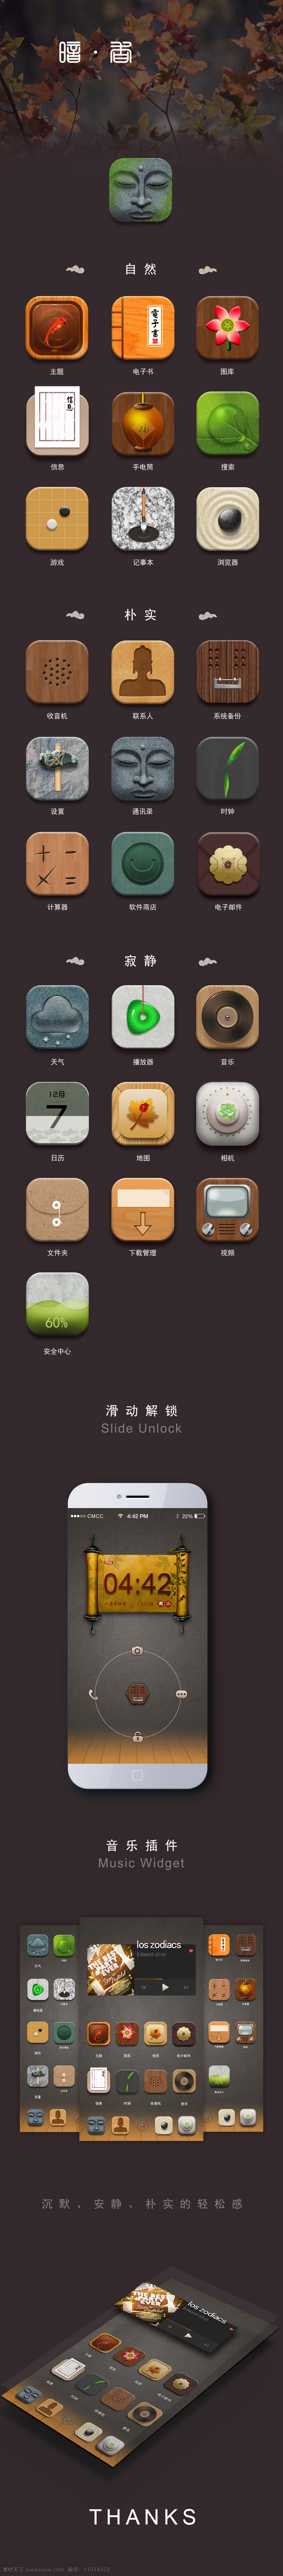 自然 复古 中国 传统文化 手机 app 图标 中国古色古香 质朴 接近大自然 宁静之美